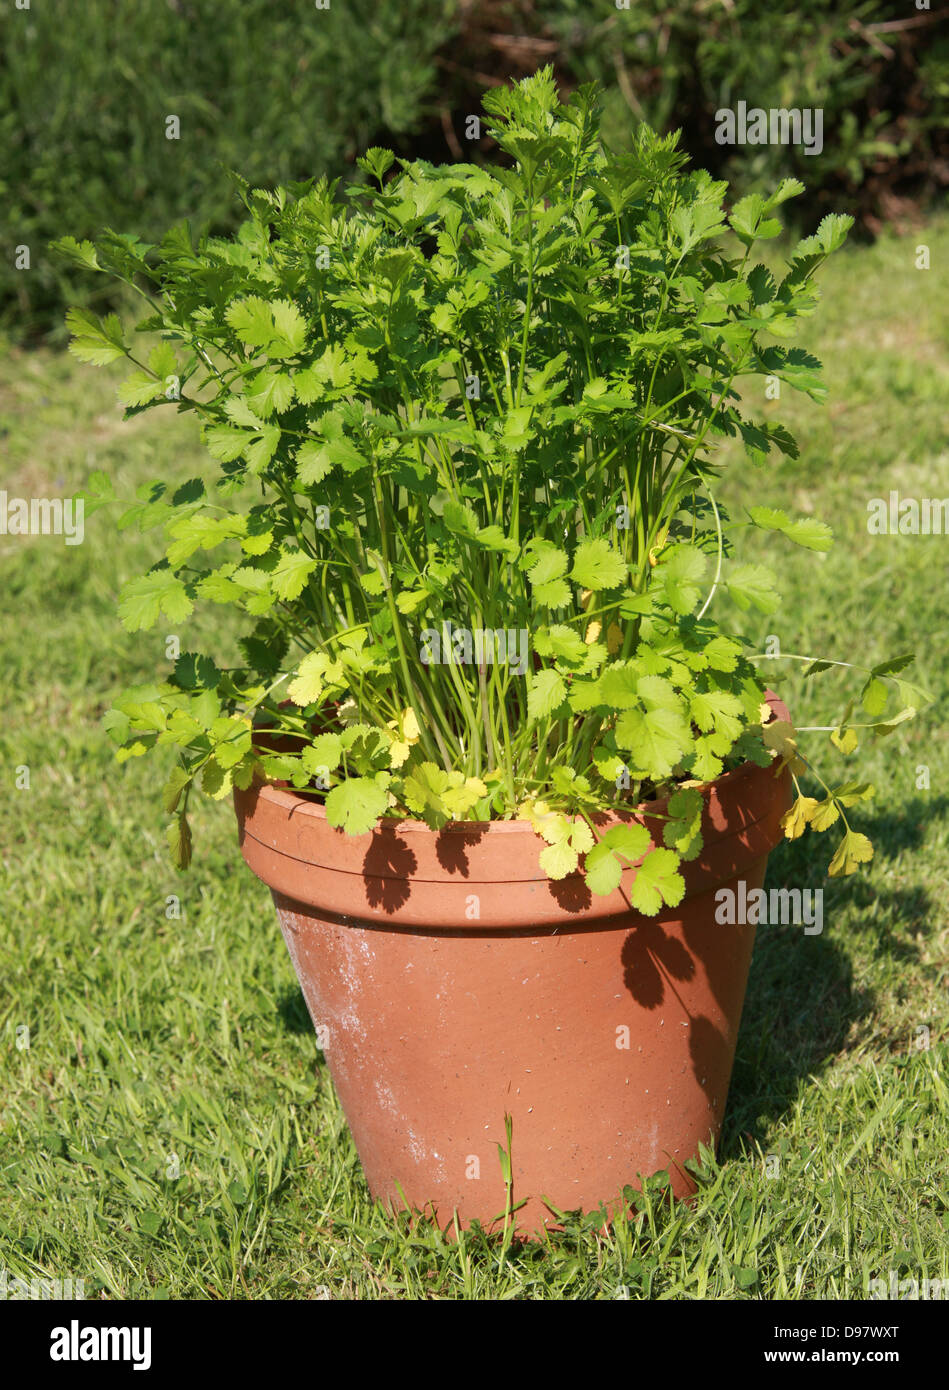 La coriandre, Coriandrum sativum, Apiaceae. Aussi connu sous le nom de persil chinois, cilantro ou dhania, est une plante de la famille des Apiaceae. Banque D'Images